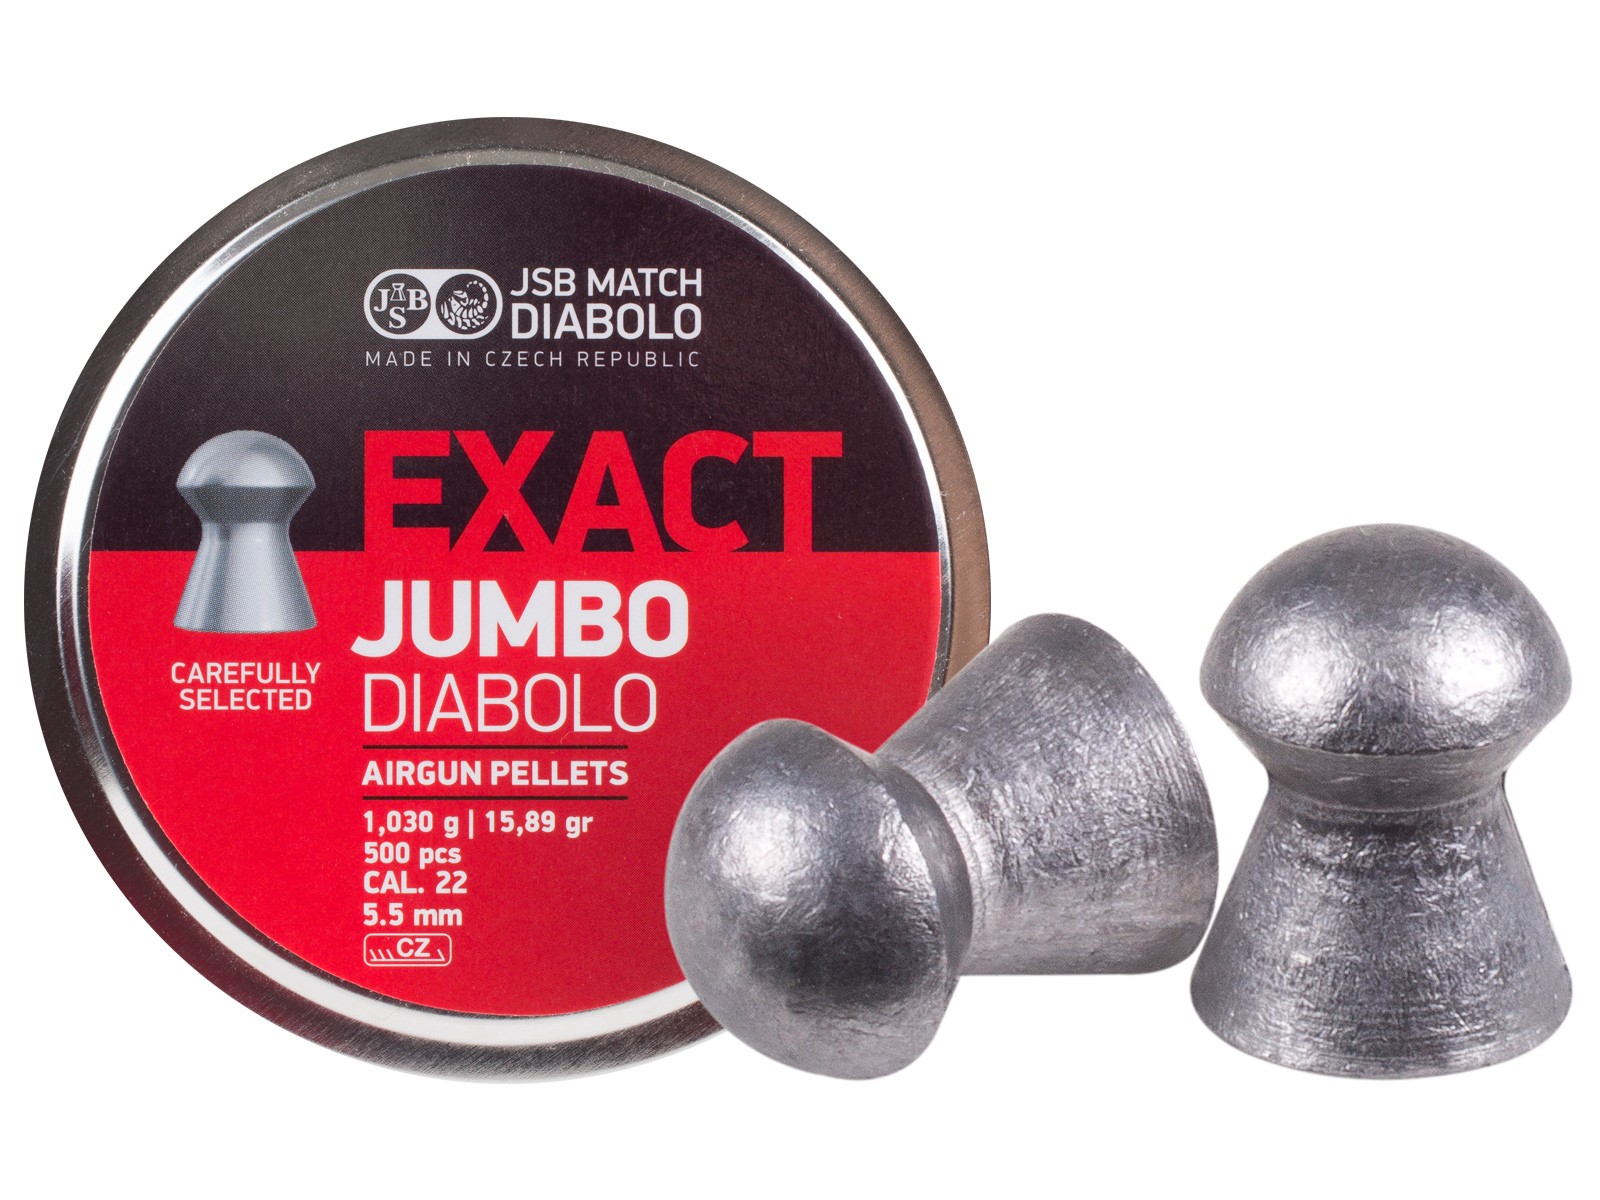 JSB Diabolo Exact Jumbo .22 Cal pellet